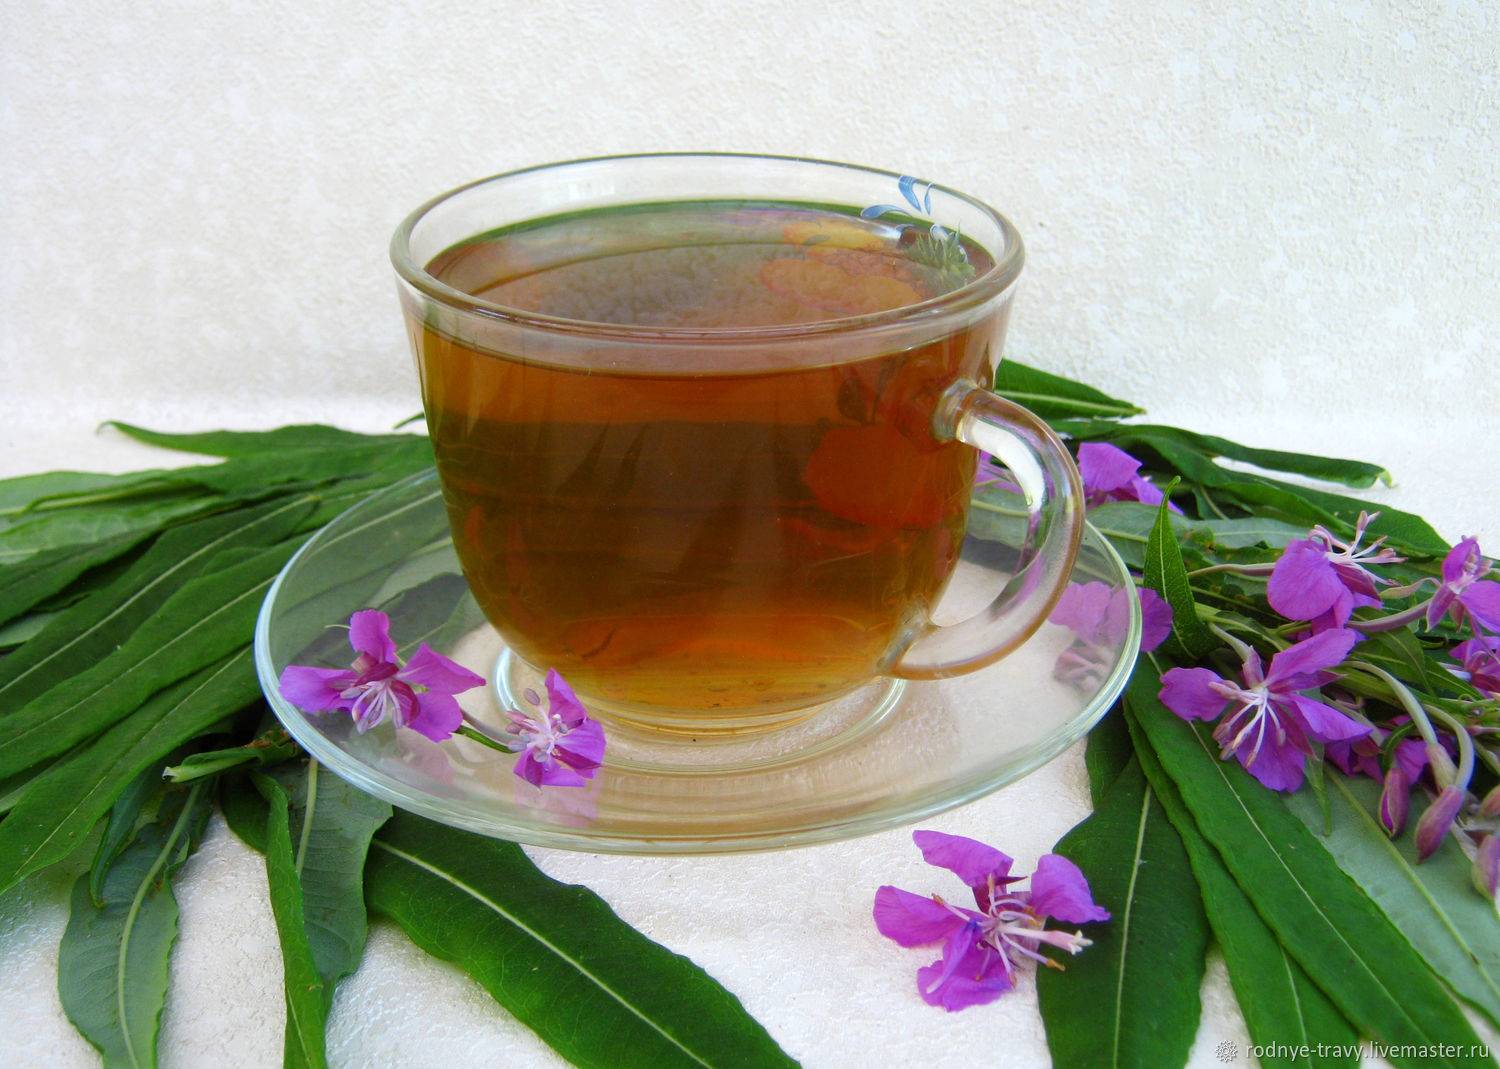 Иван-чай - как собирать и сушить, способы правильного приготовления на зиму и употребления